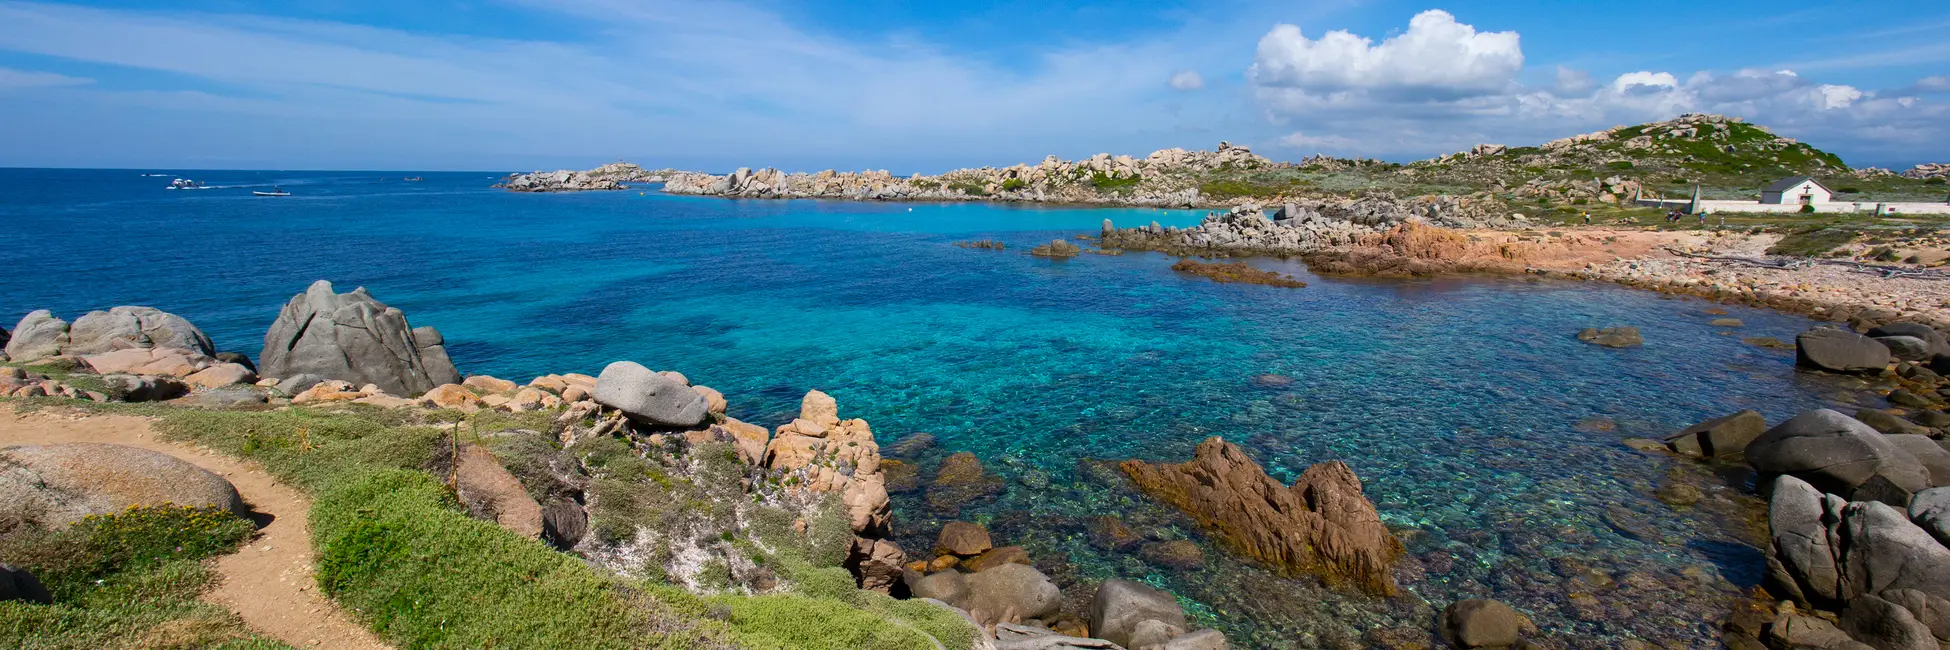 Les îles Lavezzi en Corse